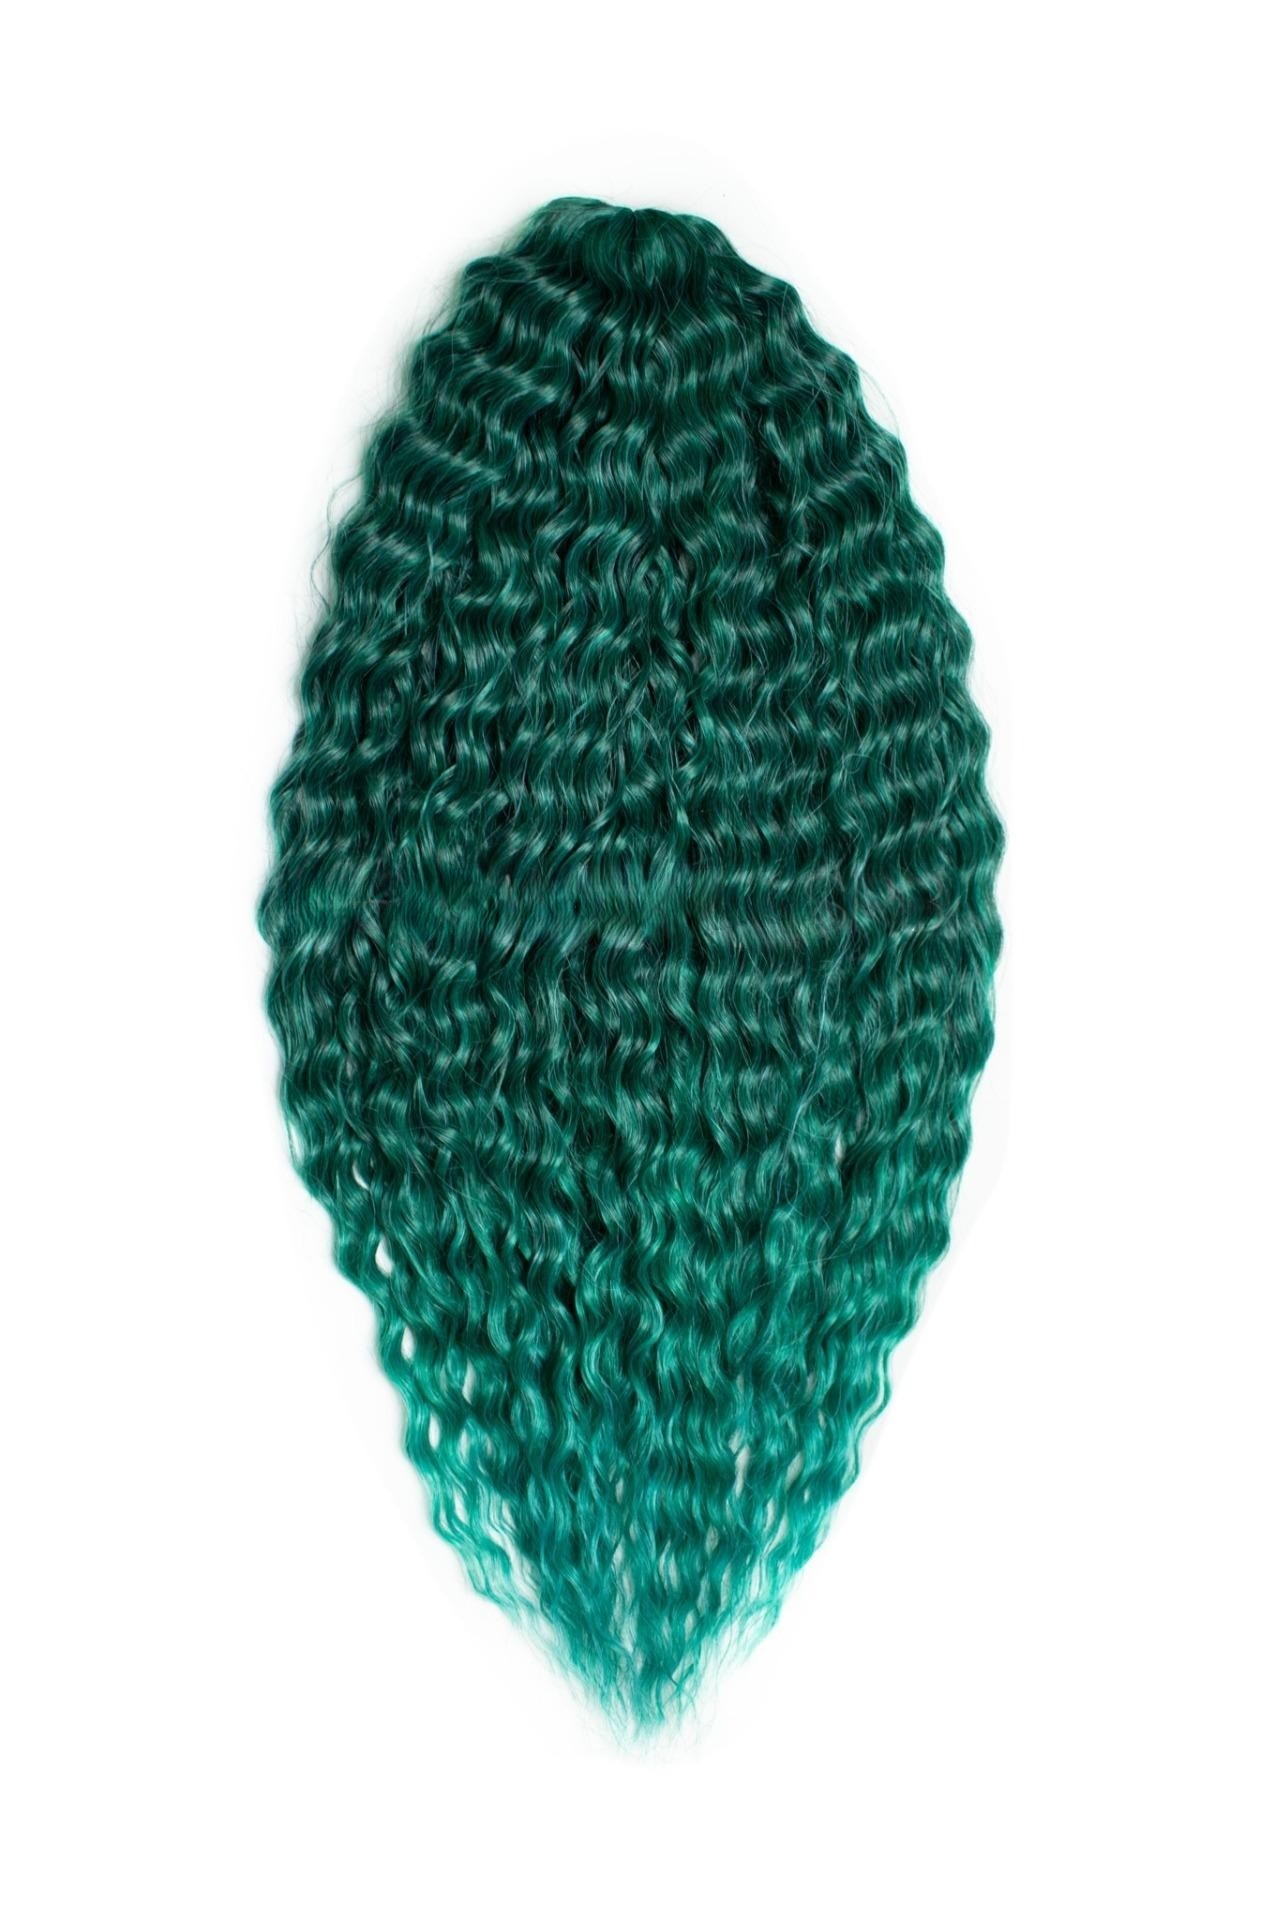 Афрокудри для плетения волос Ariel Ариэль цвет EMERALD зеленый длина 66см вес 300г афрокудри для плетения волос ariel t16 60a cерый длина 55см вес 300г